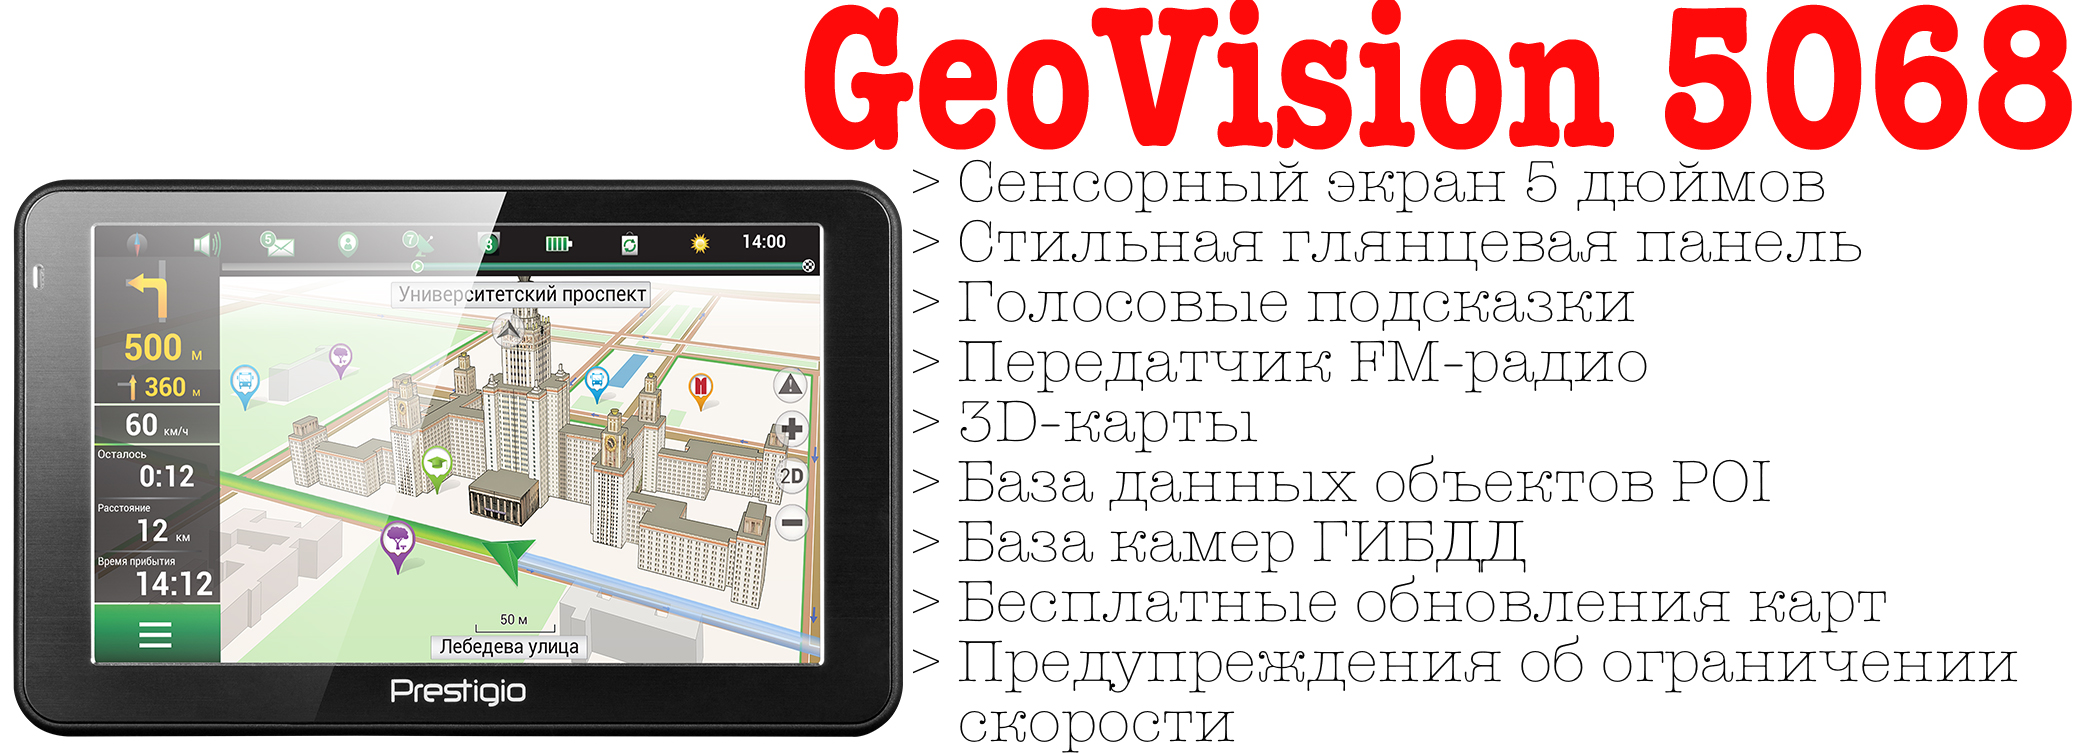 Навигационное руководство. GPS-автонавигатор Prestigio GEOVISION 7800 про город. Навигатор Prestigio 5300 характеристики. Престиж навигатор инструкция. Магазин навигатор телефон